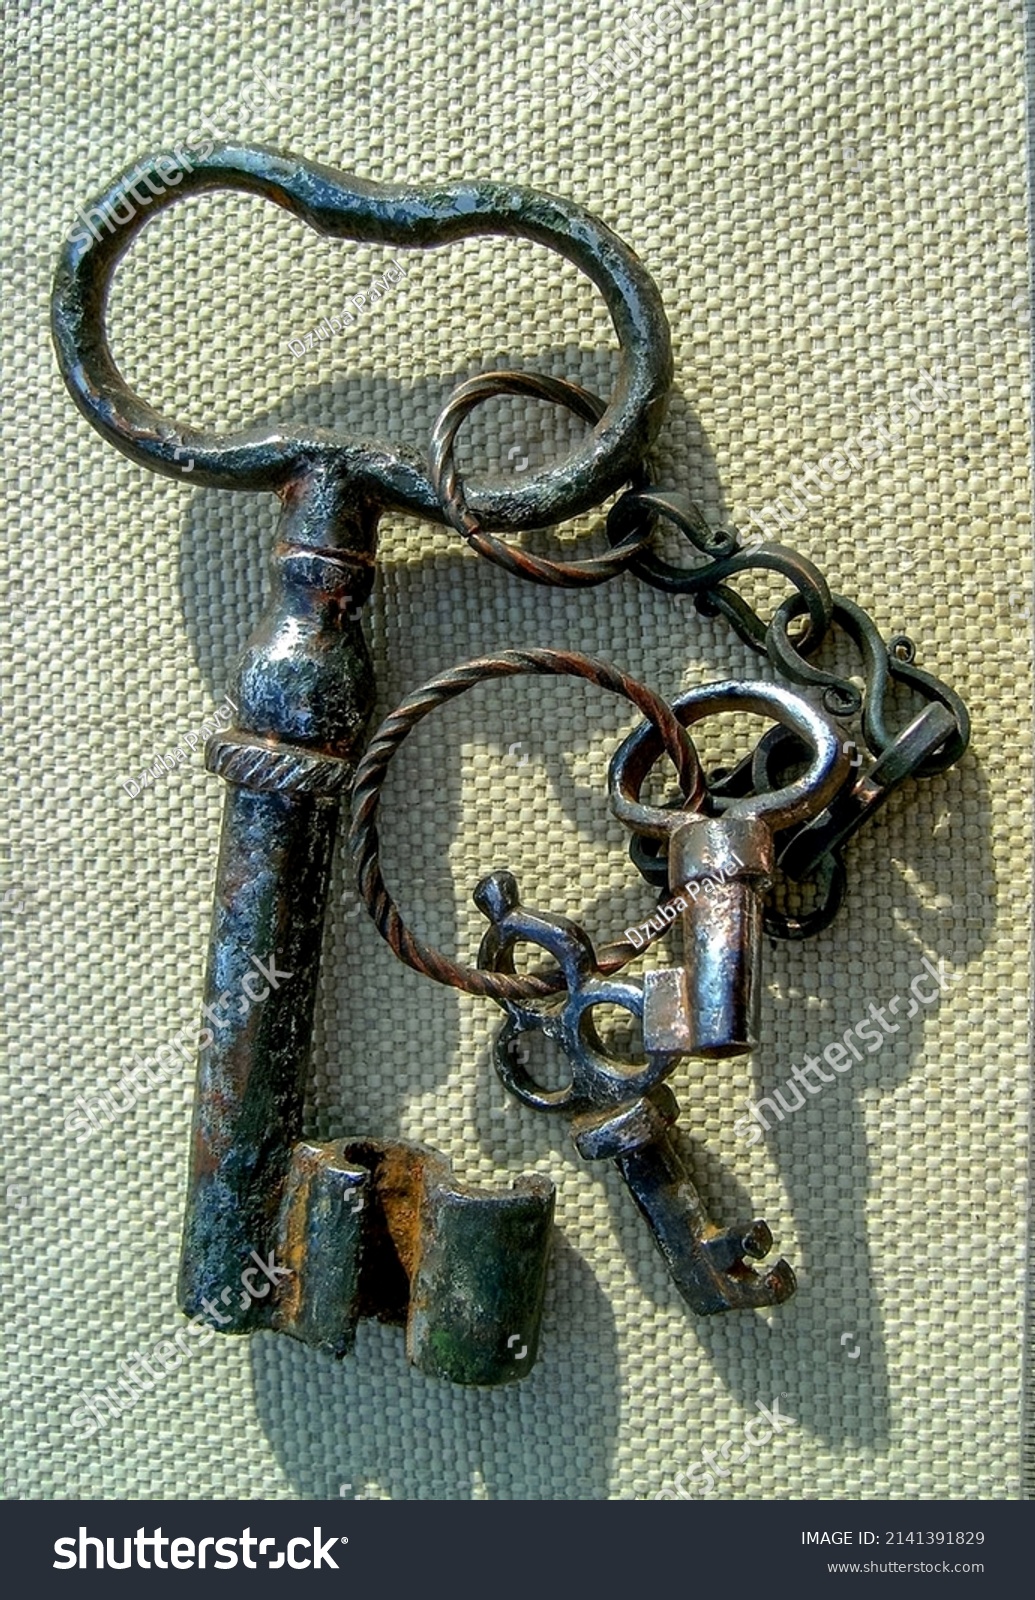 Vintage keys close - up, 18th, Keys of vintage locks #2141391829